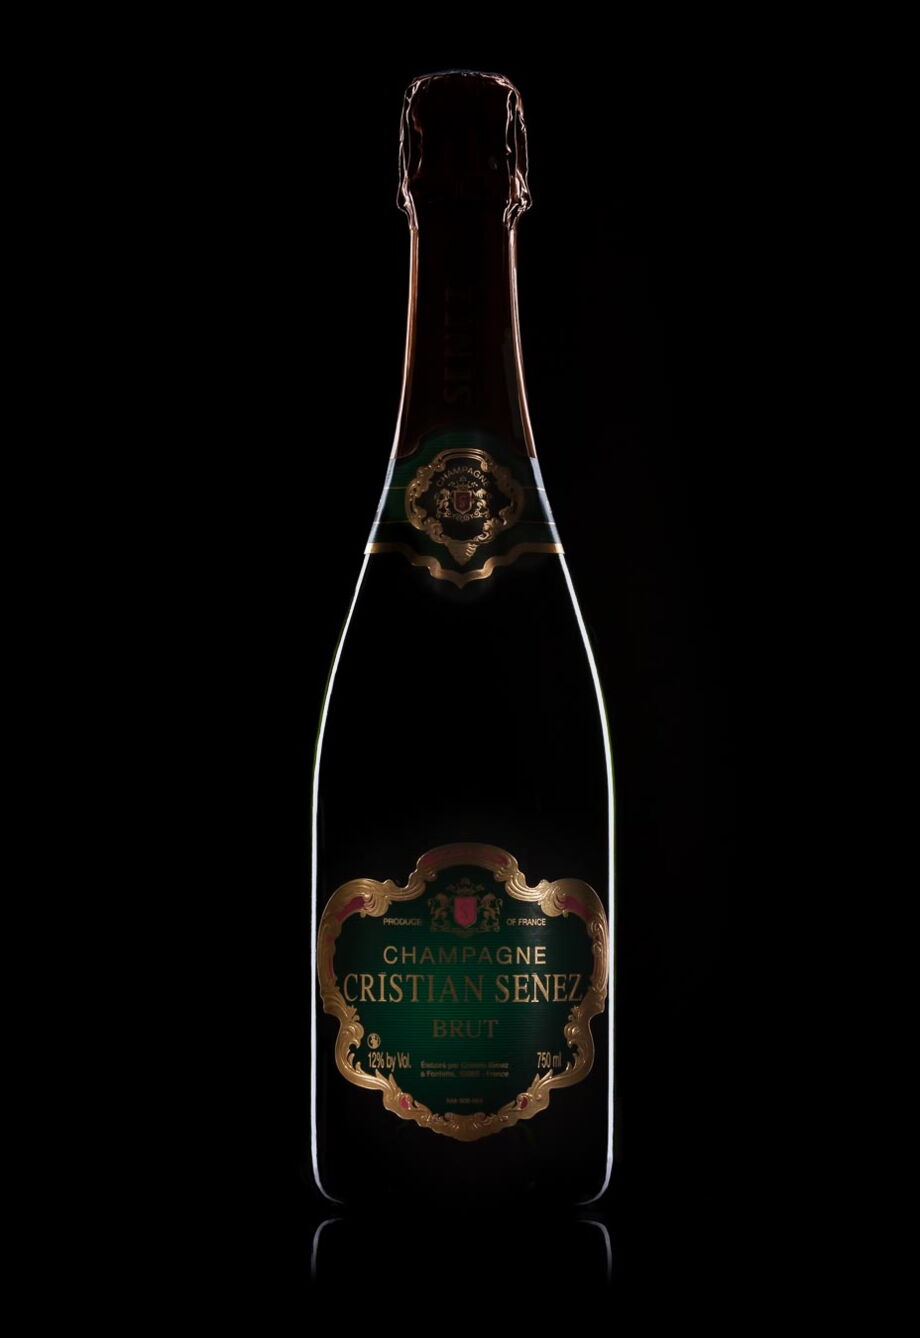 Werbefotografie einer Champagnerflasche auf schwarzem Hintergrund